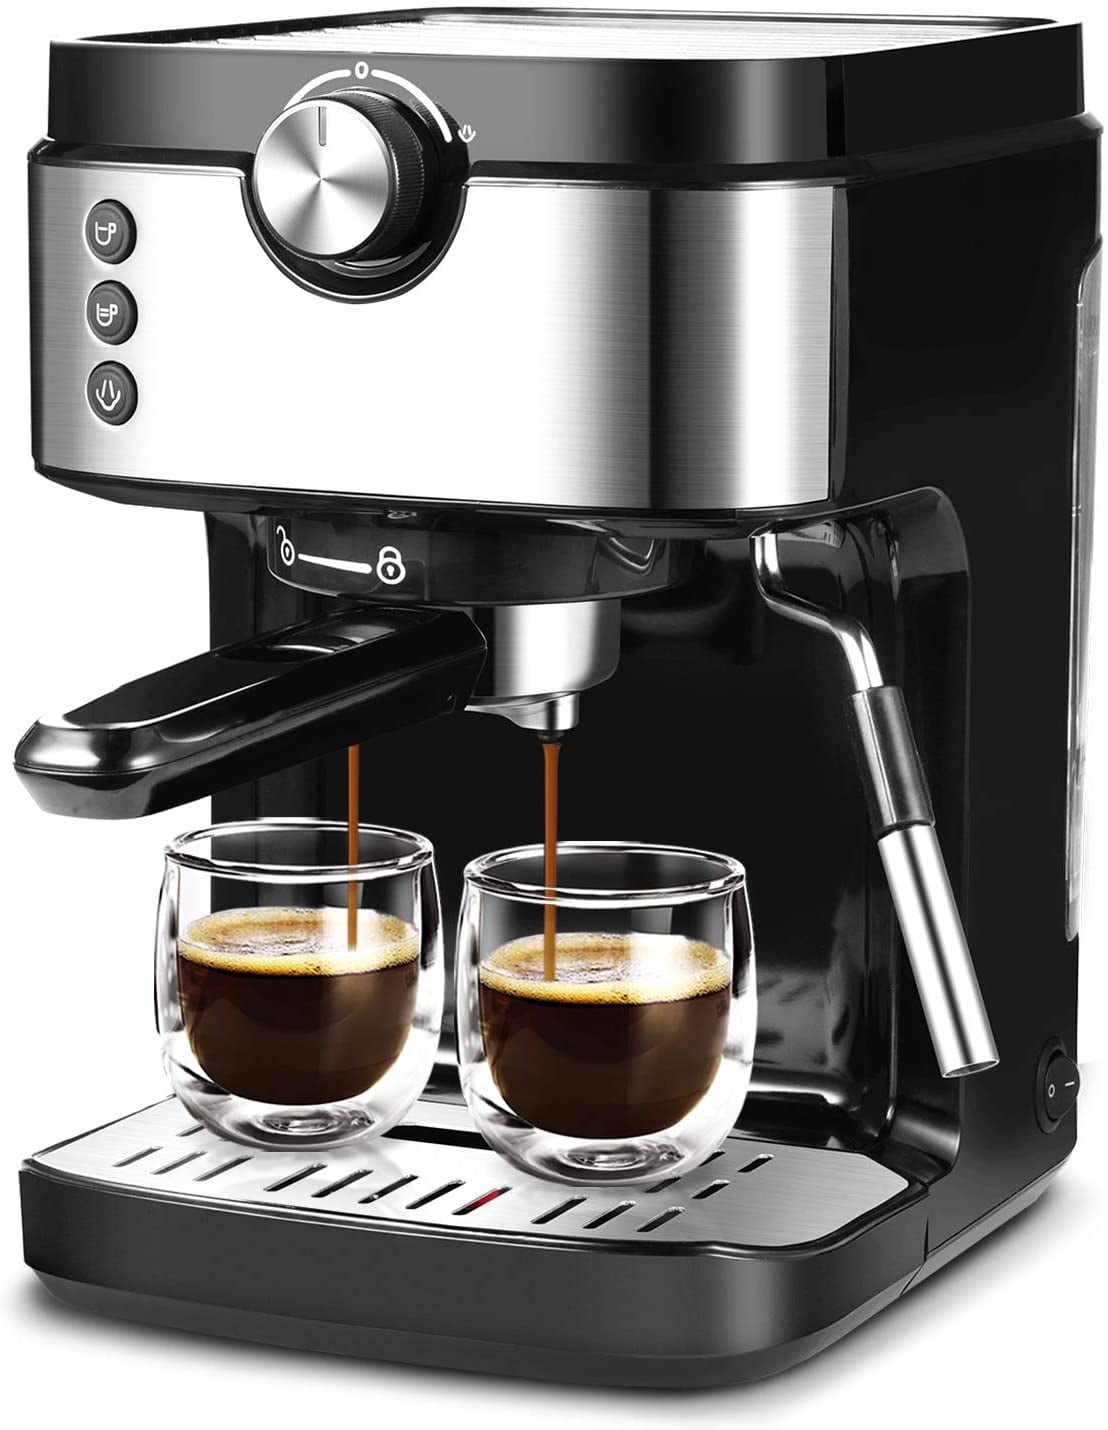 Bonsenkitchen Espresso Machine 20 Bar Coffee Machine